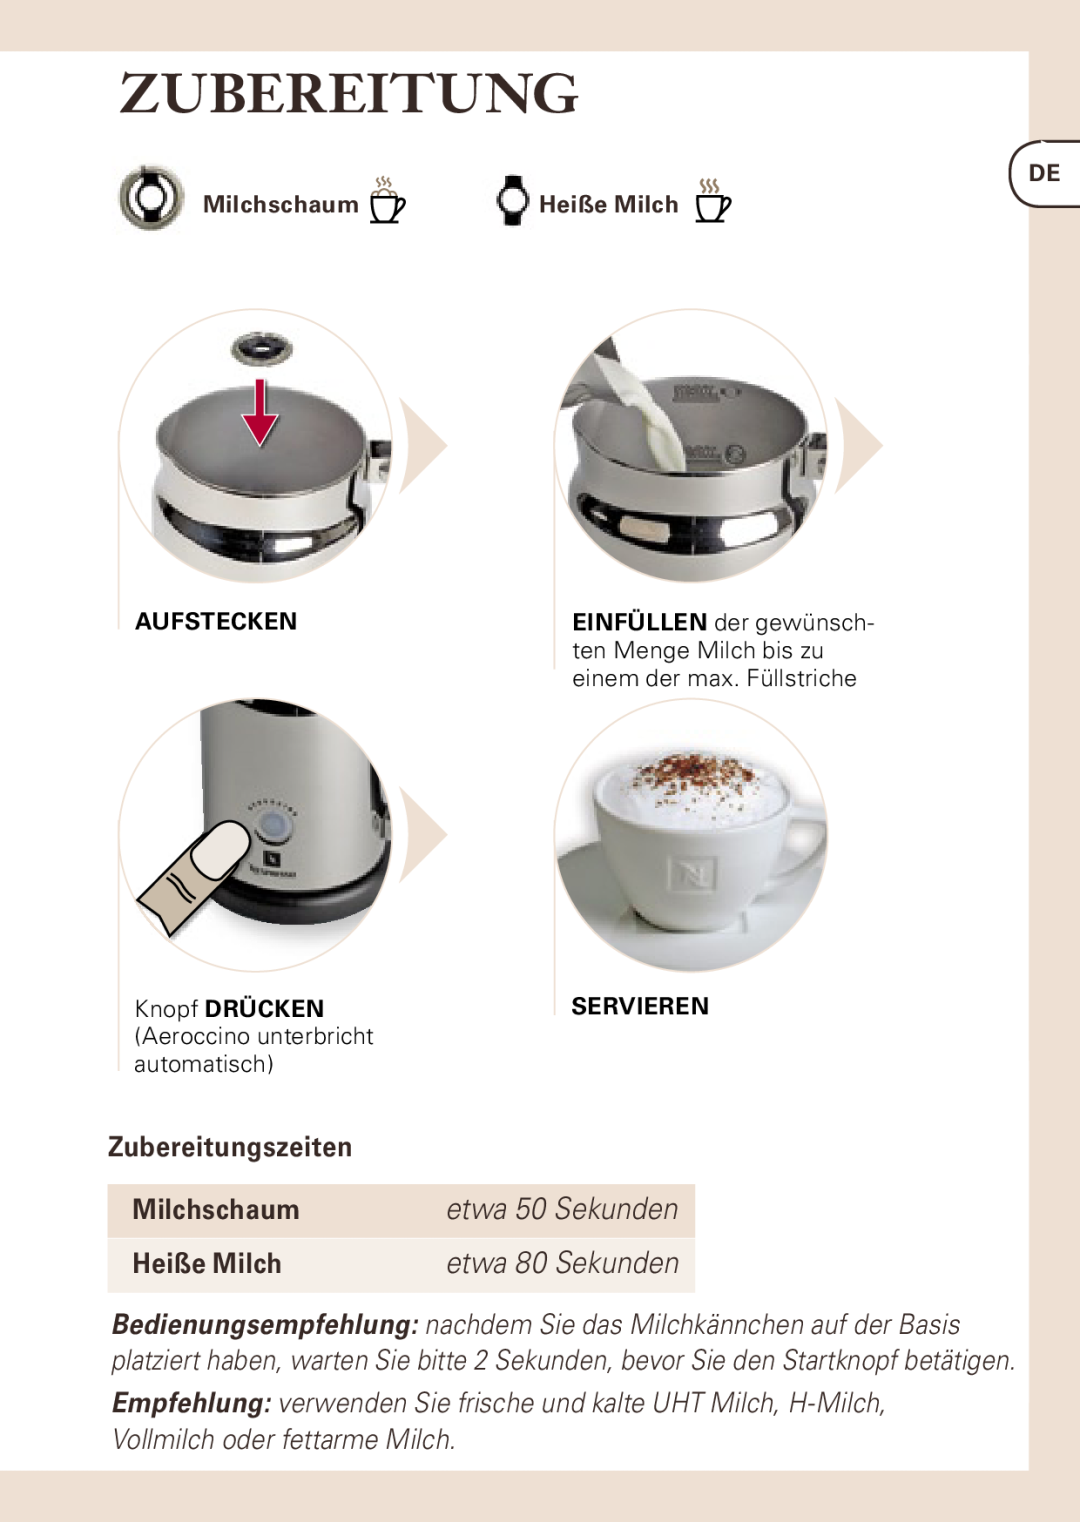 Nespresso AEROCINNO 3190 Zubereitungszeiten, Milchschaum, Heiße Milch, Servieren, etwa 50 Sekunden, etwa 80 Sekunden 